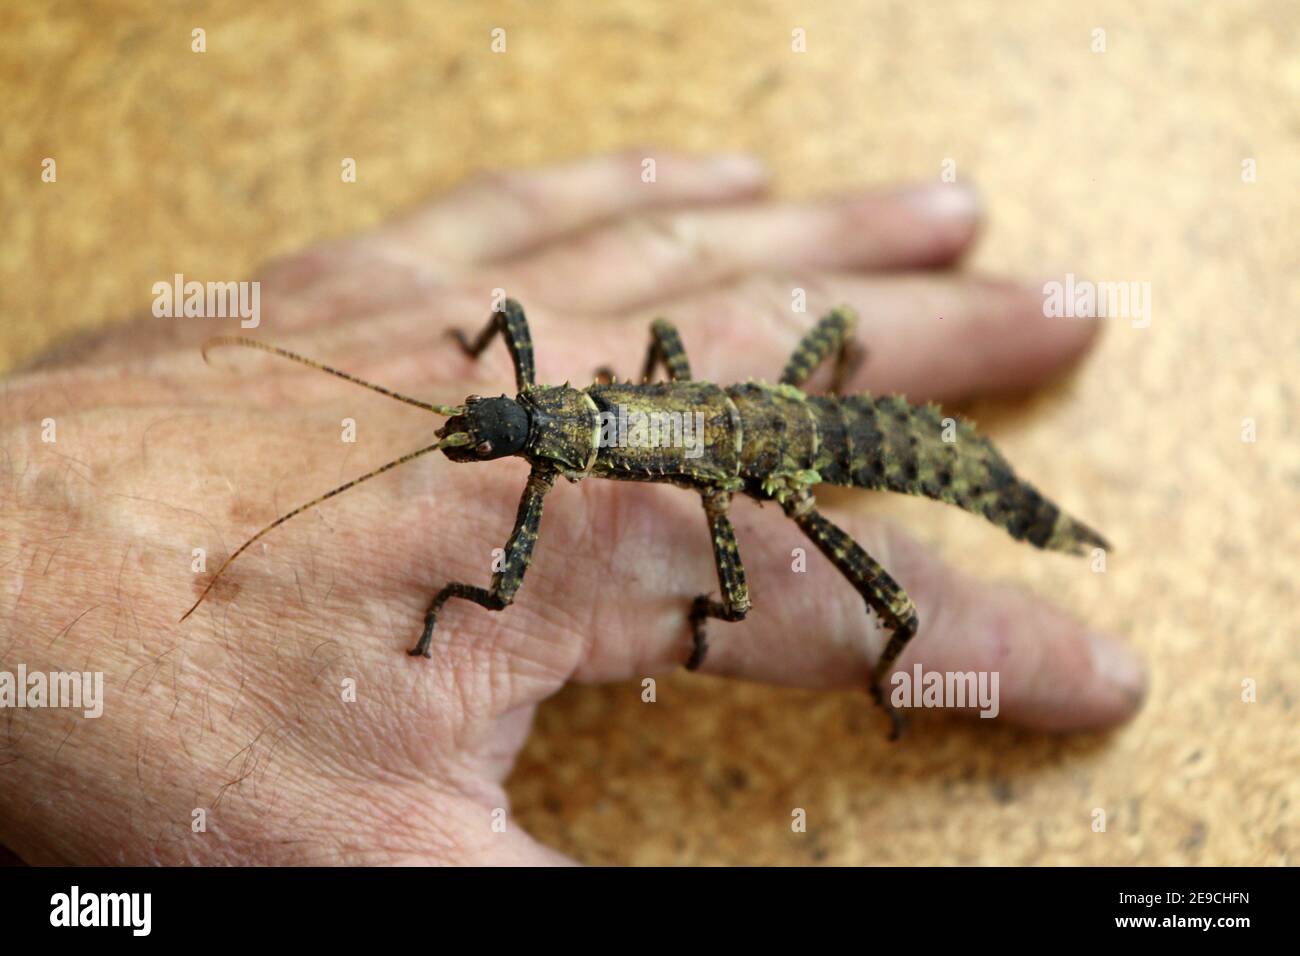 Ein Detailbild eines großen Insekts, phasmatodea, das auf der Hand eines Mannes steht. Stockfoto